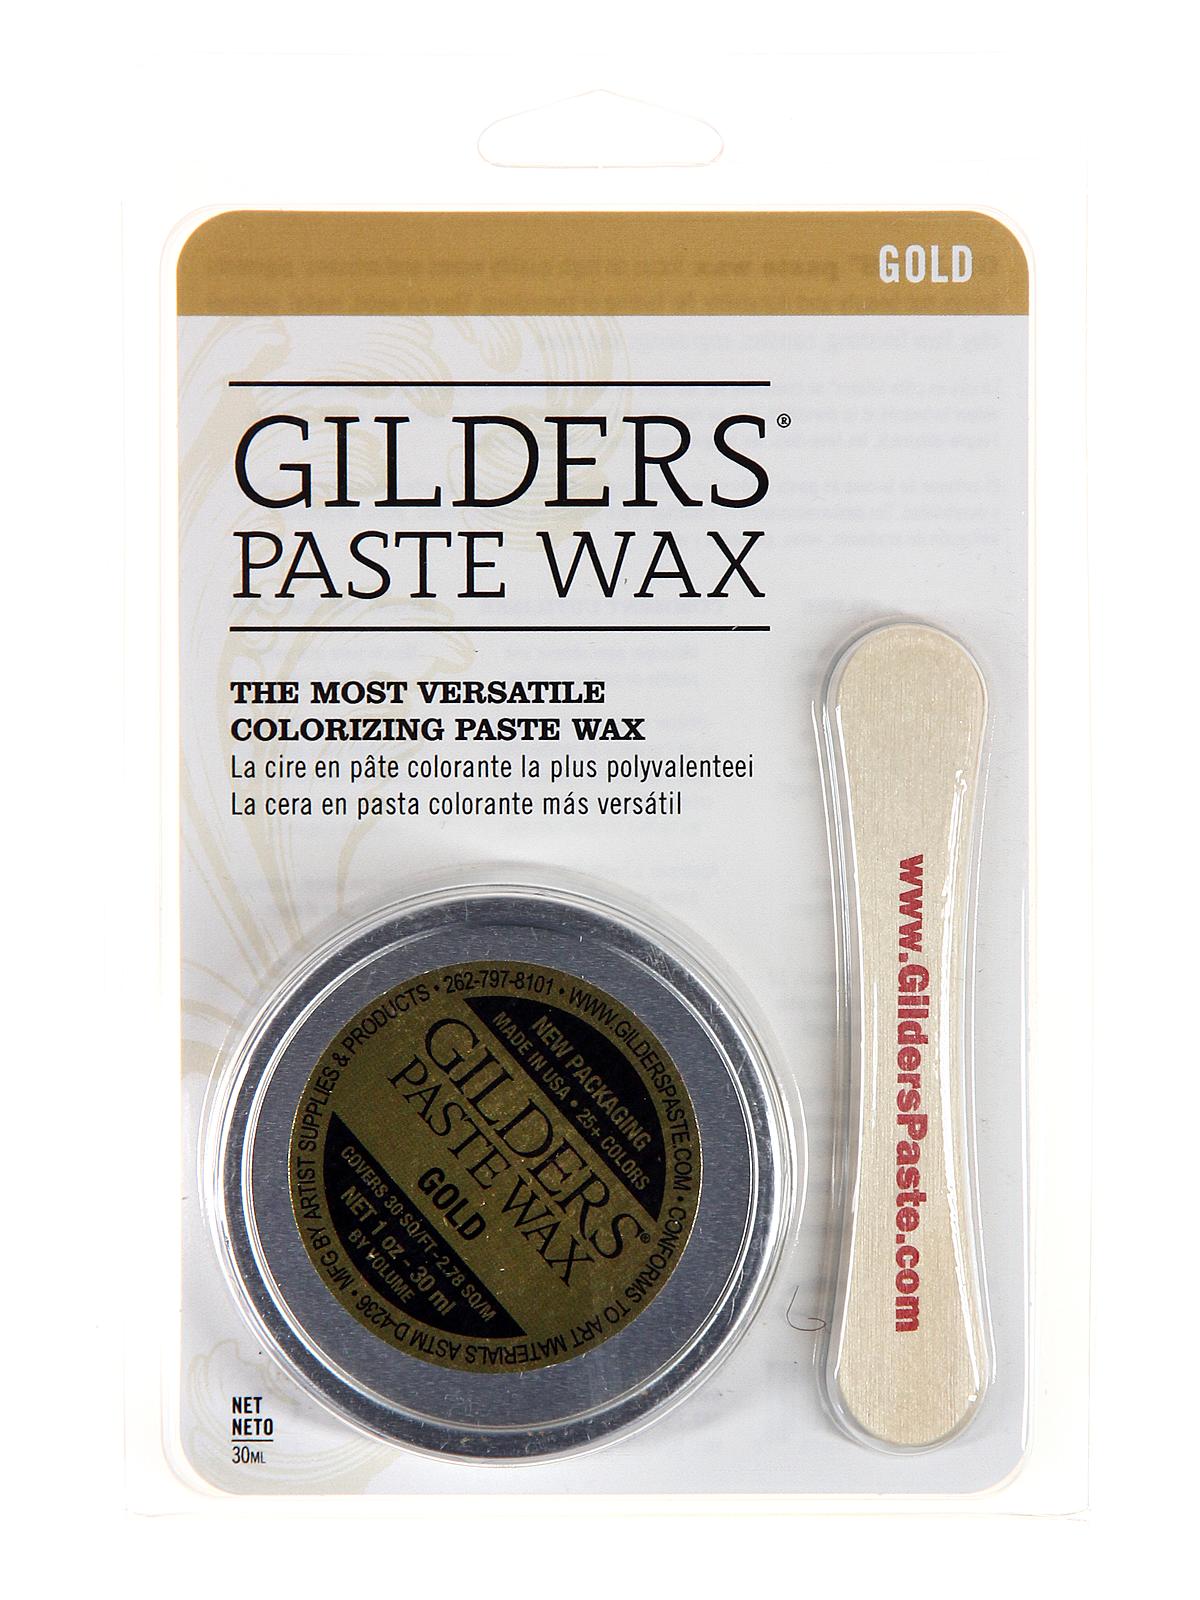 Gilder's Paste Wax Gold 1 Oz. Tin